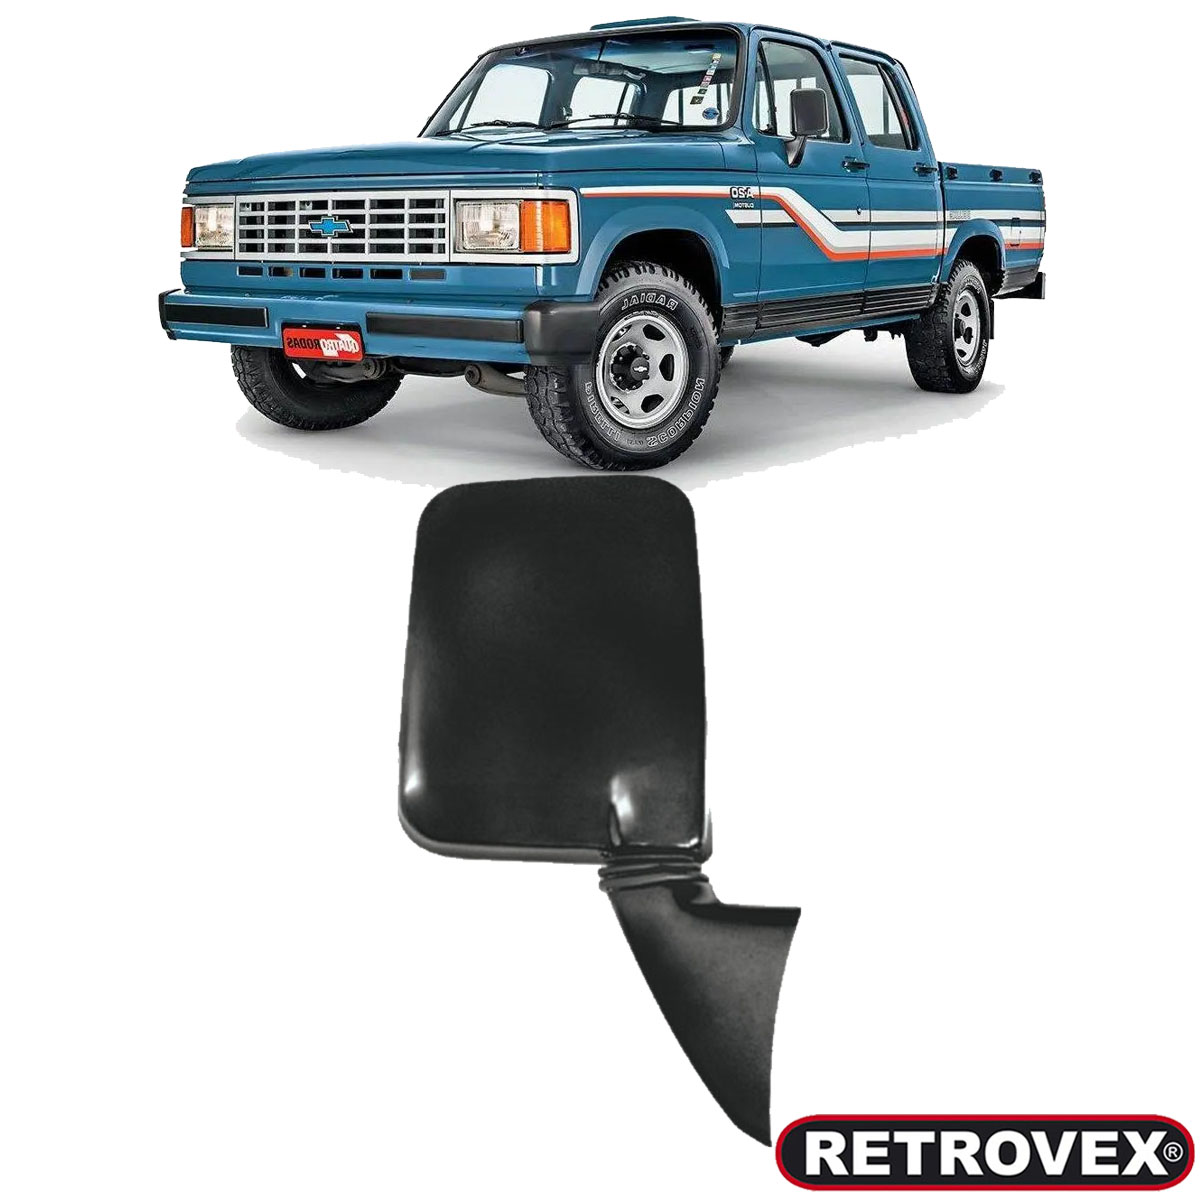 Retrovisor Lado Direito - Pick-Up D20 91 / - 2202 - Retrovex